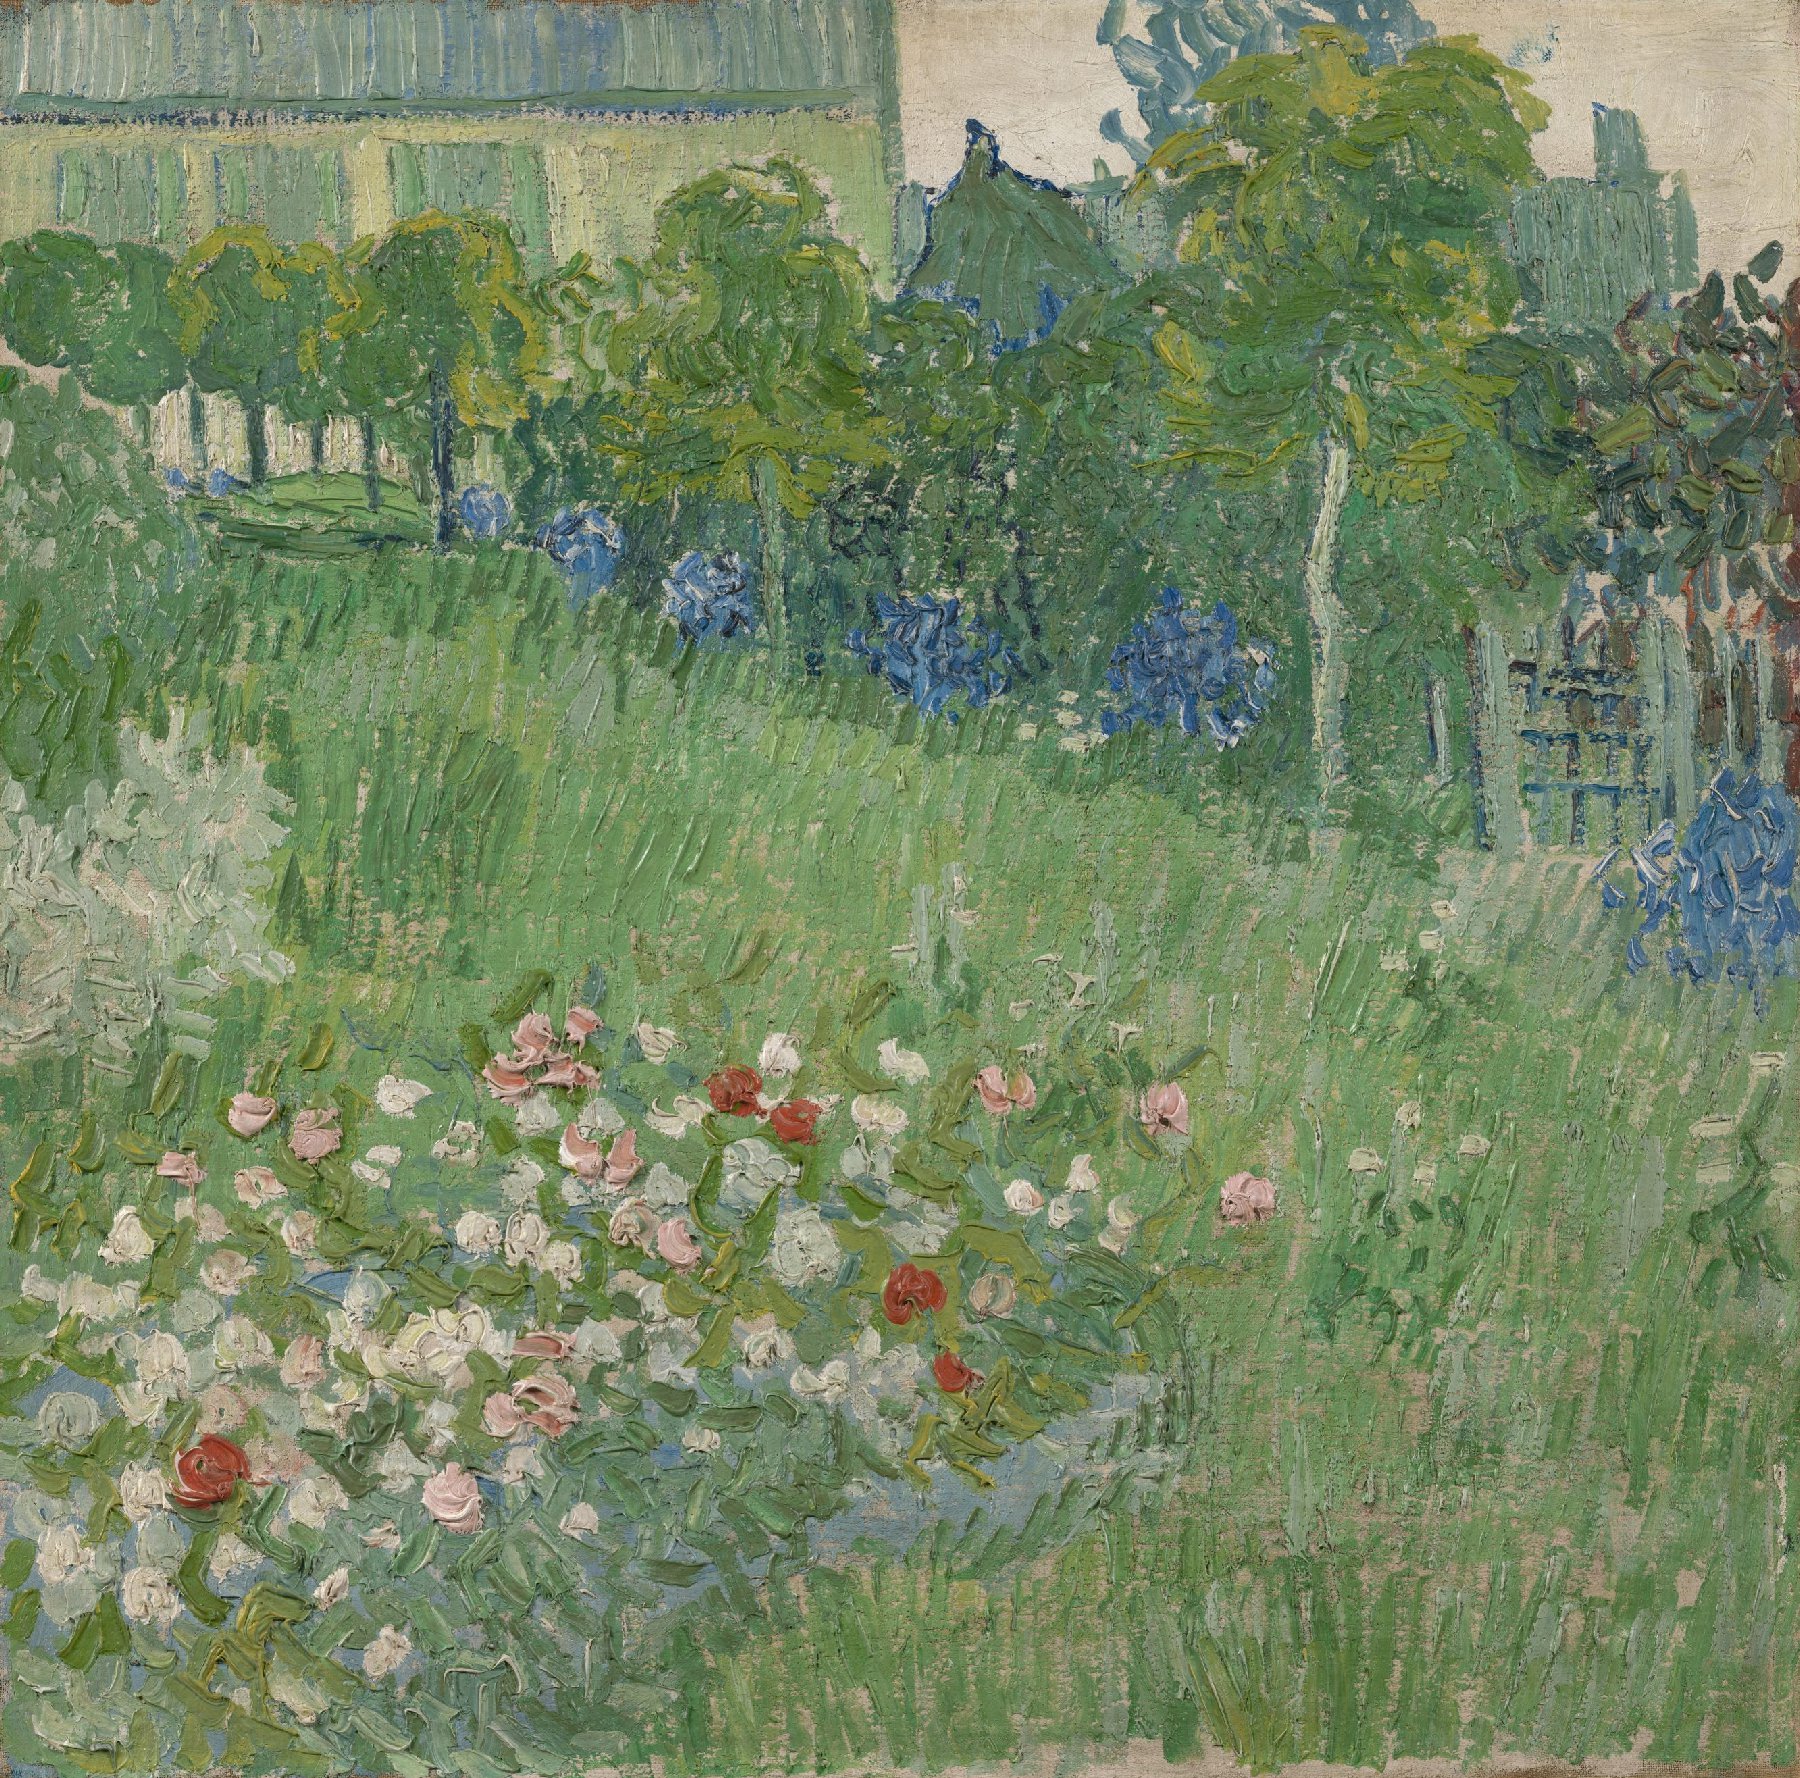 De tuin van Daubigny Vincent van Gogh (1853 - 1890), Auvers-sur-Oise, juni 1890